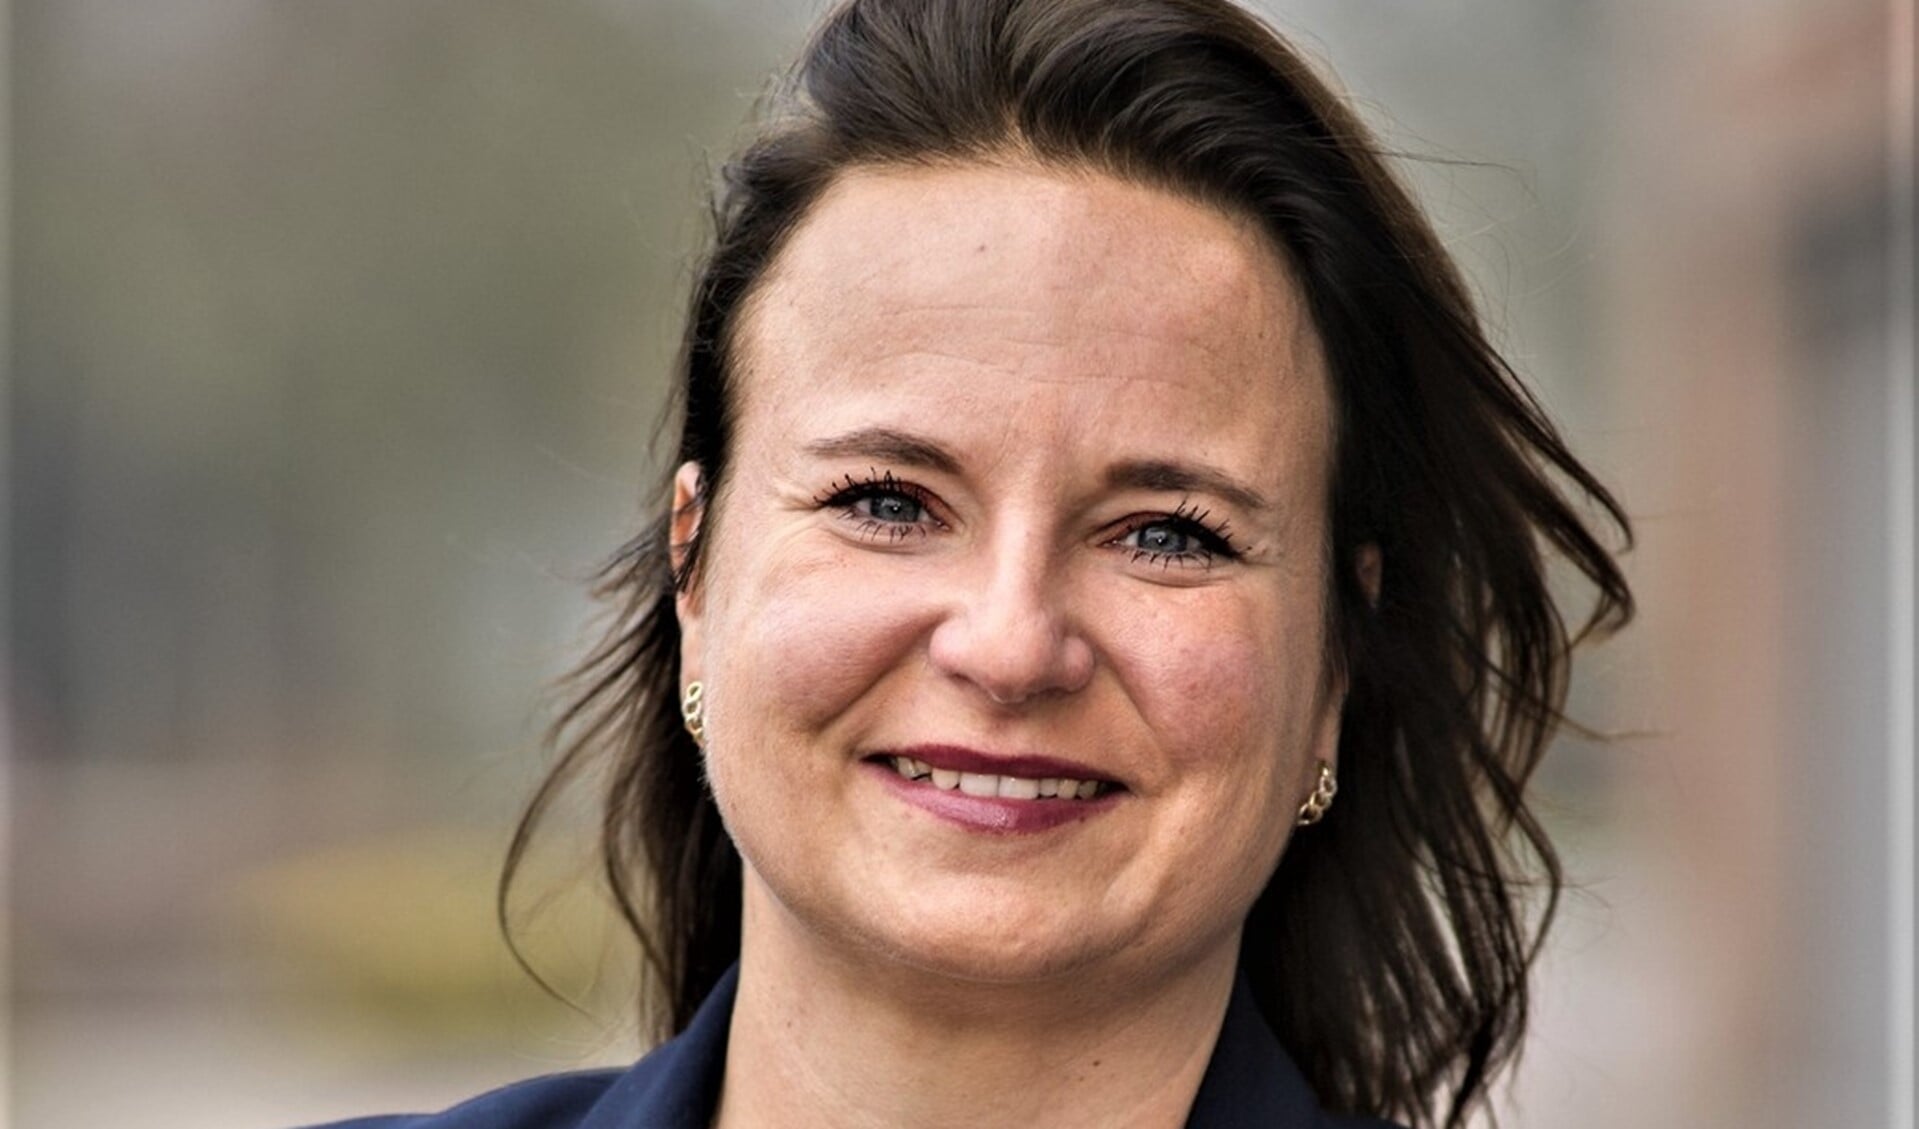 Wethouder Nadine Stemerdink neemt afscheid omdat zij burgemeester van buurgemeente Voorschoten wordt (foto: gemeente LV).